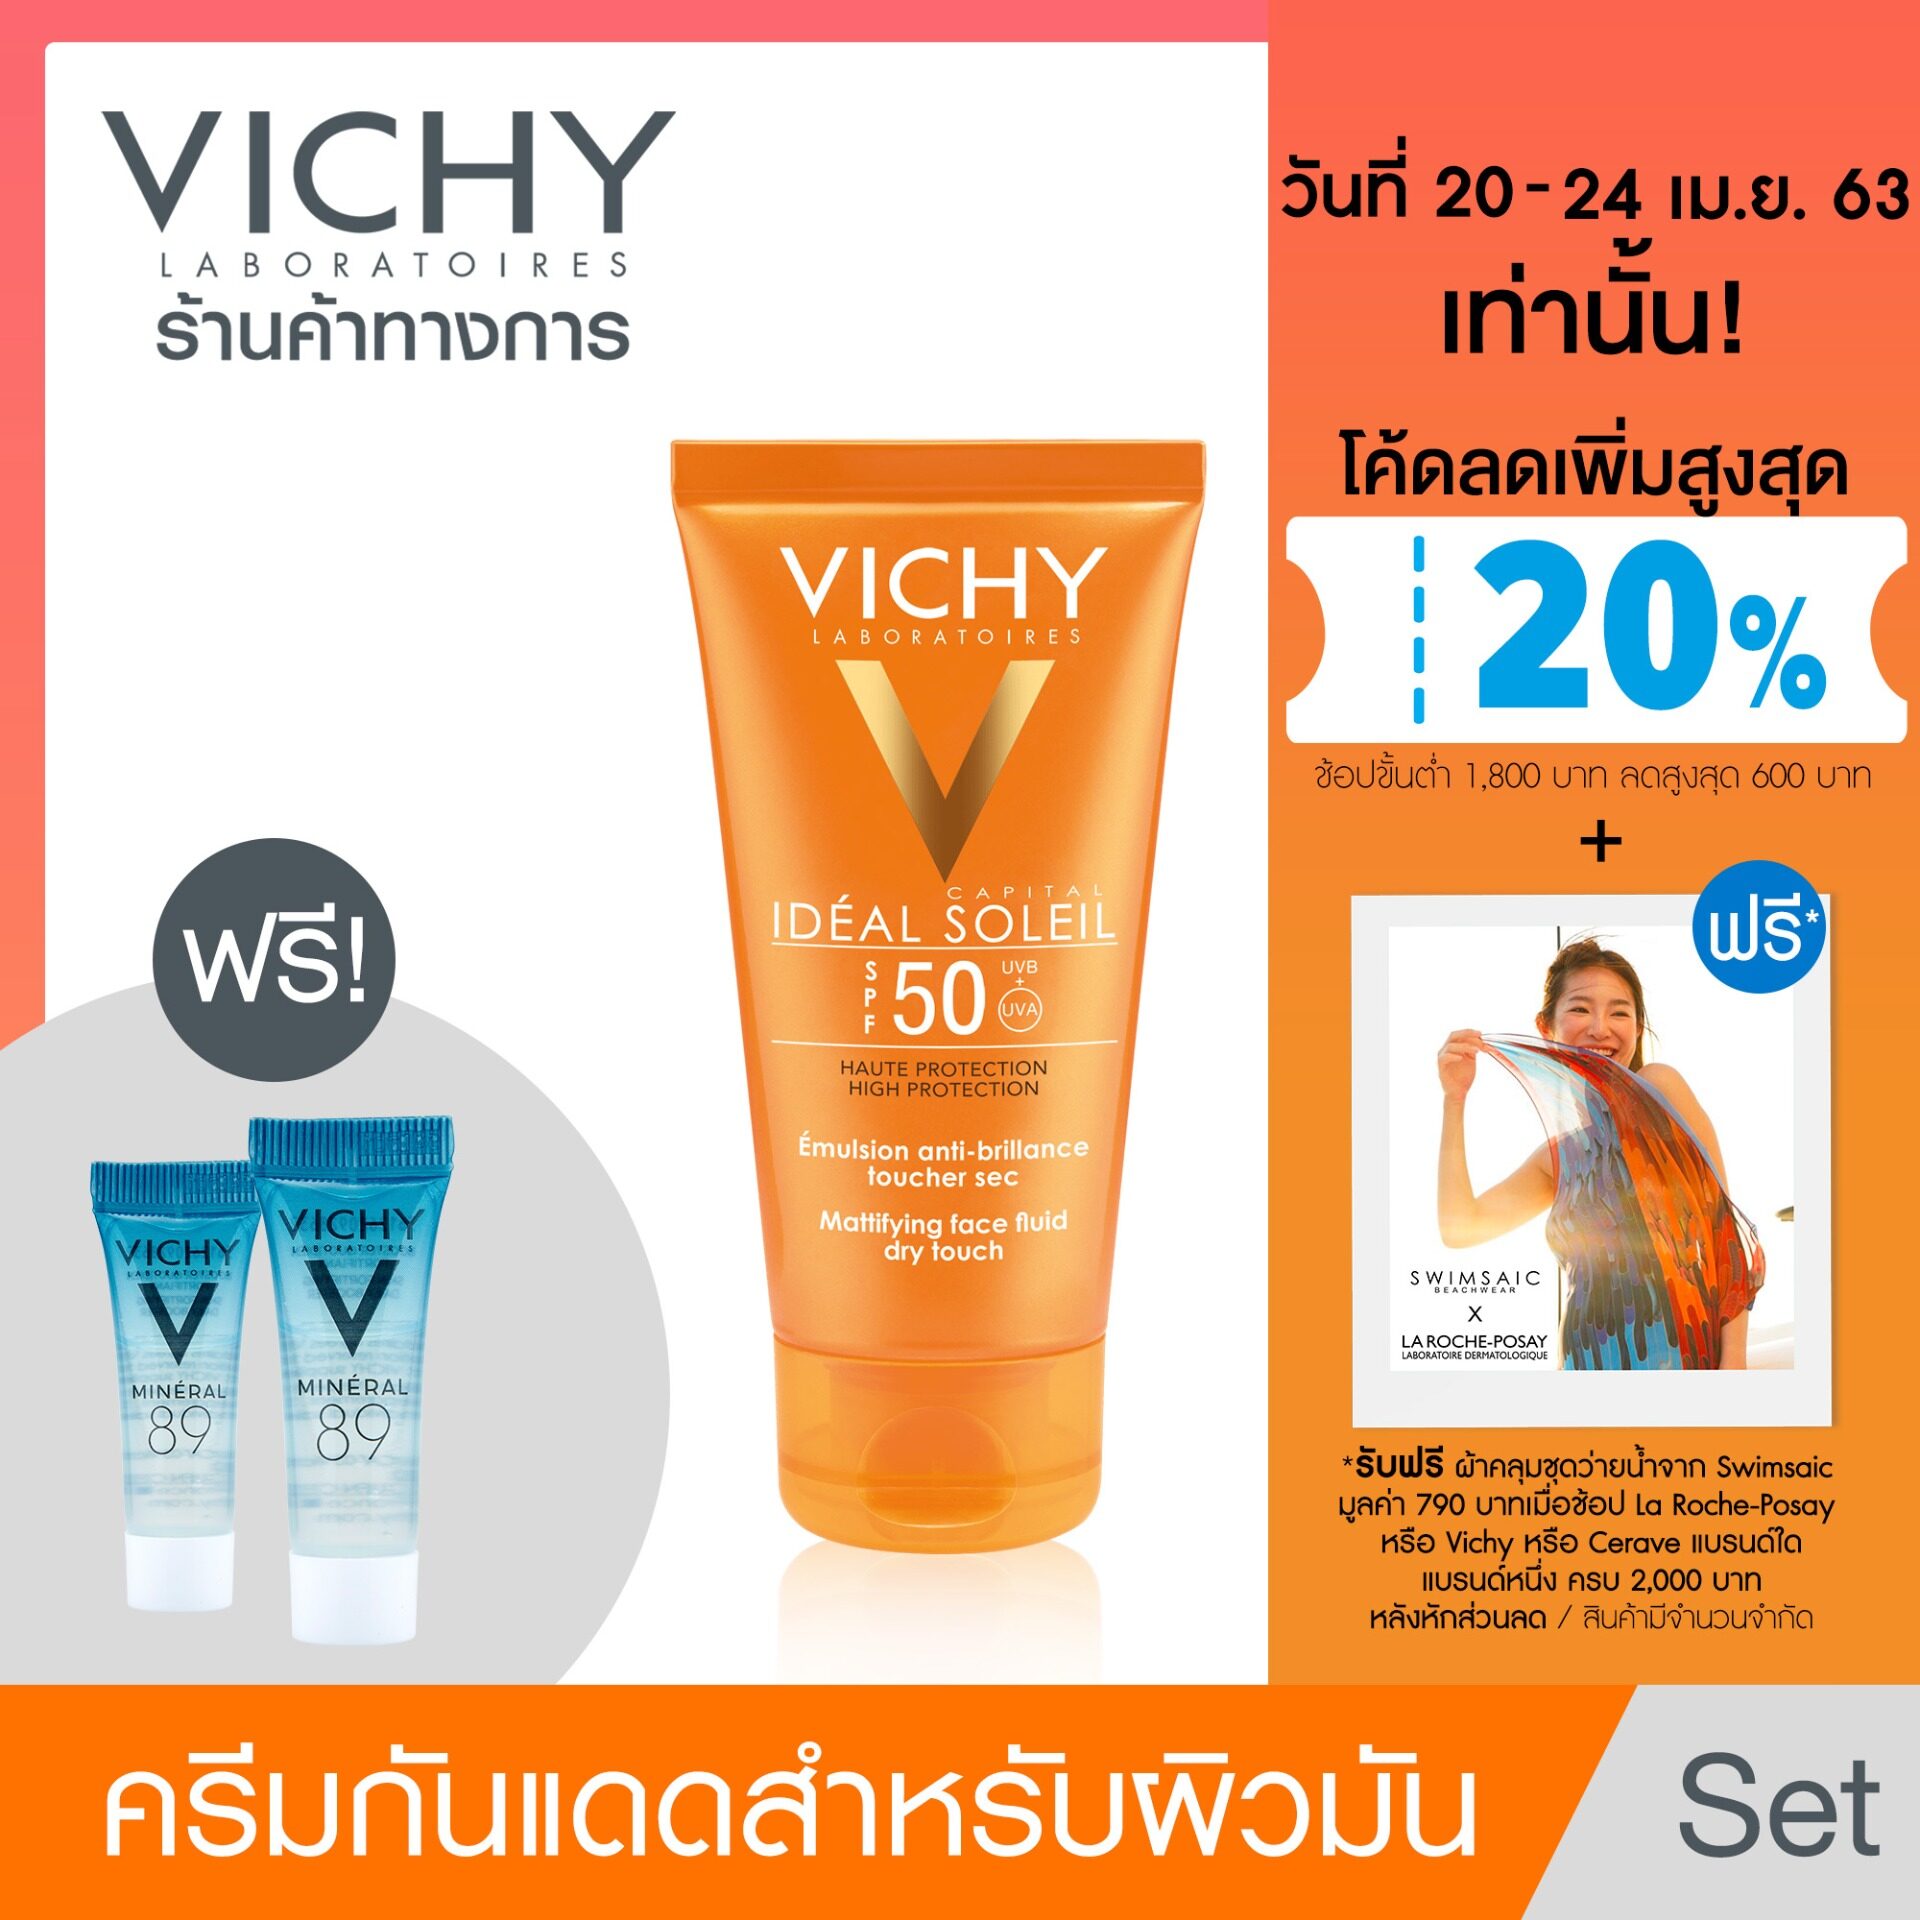 [ฟรี 2 ชิ้น] Vichy Ideal Capital Dry Touch วิชี่ ไอเดียล แคปิตอล ดรายทัช ครีมกันแดด 50 ml [ฟรี! มิเนอรัล 89 4 ml 2 ชิ้น ] ( ครีมกันแดด กันแดด ครีมกันแดดหน้า )